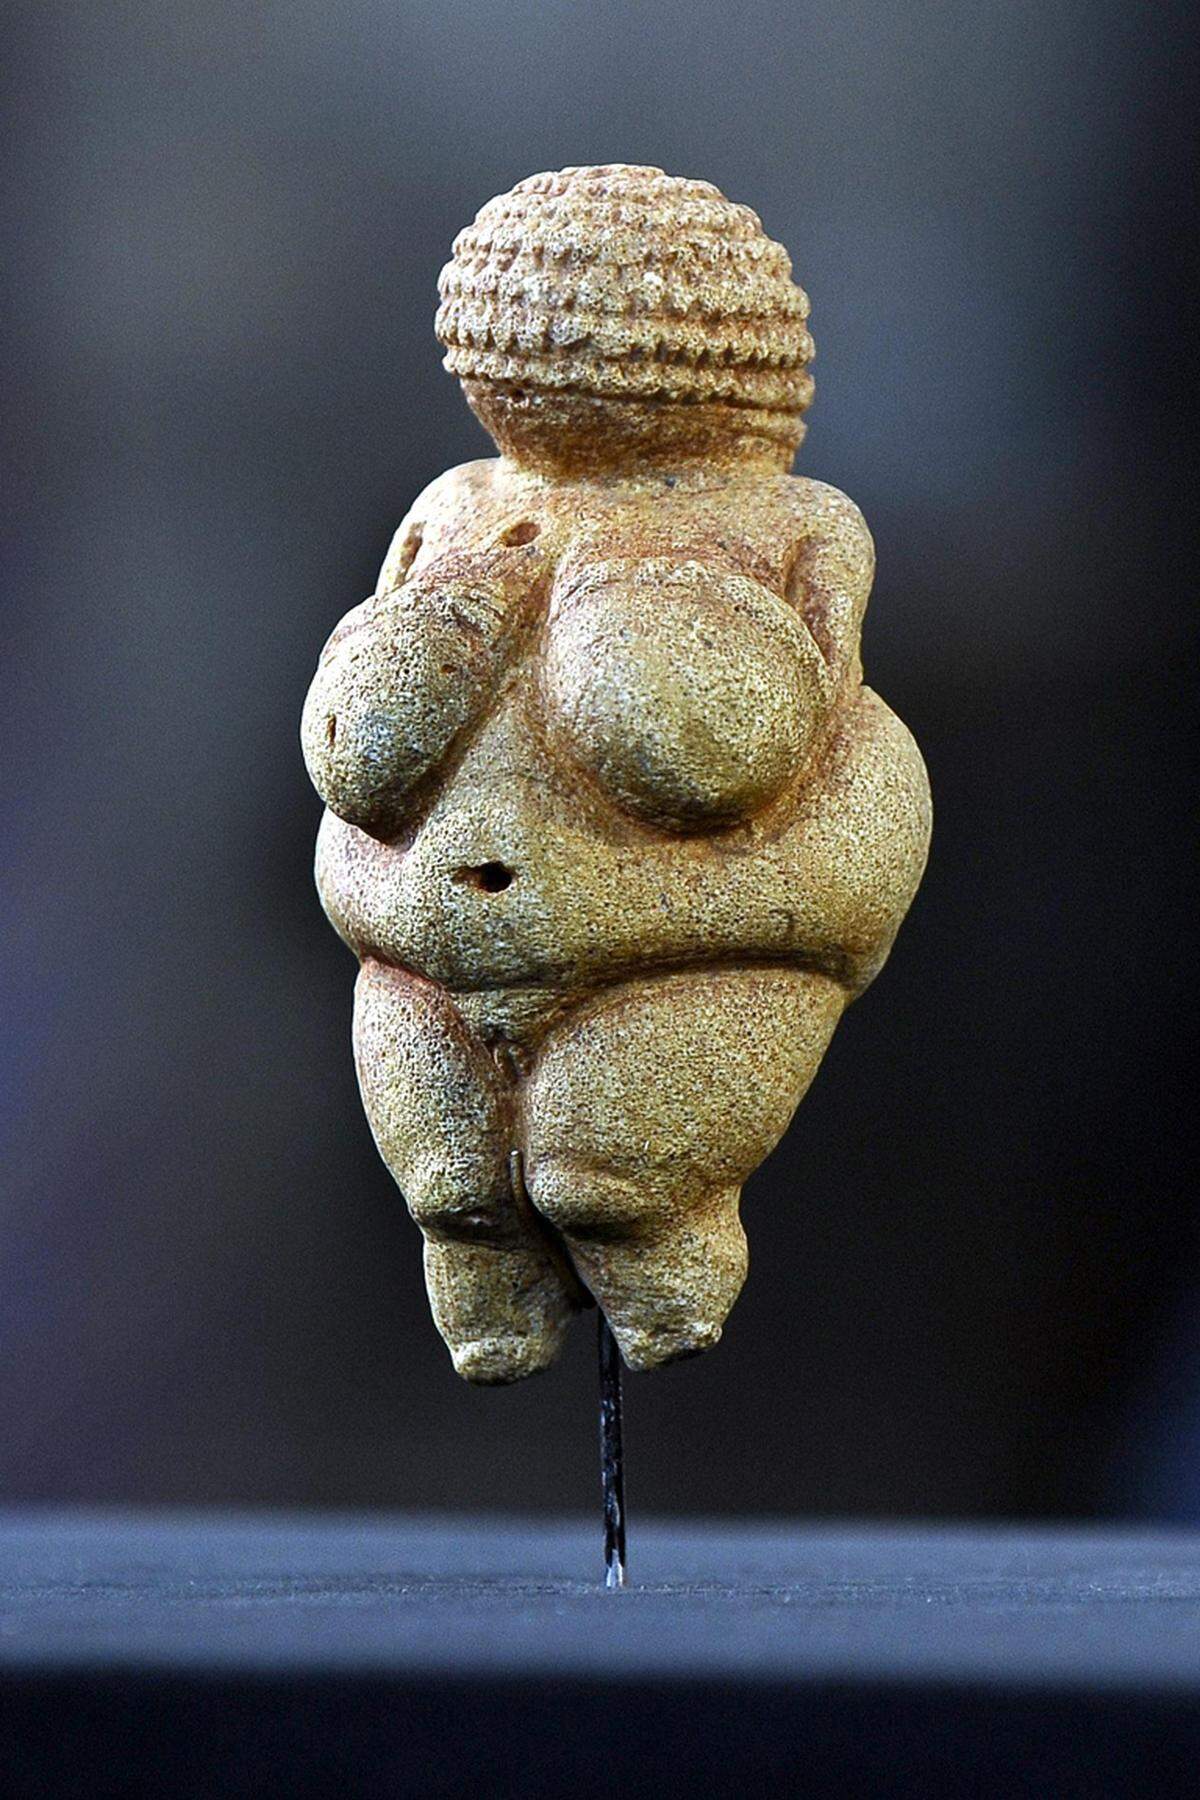 Ein Wachauer Original. Häufig wird die kleine (11 cm) Venus von Willendorf als historischer Beleg herangezogen, dass Fettleibigkeit in der europäischen Frühgeschichte en vogue war.